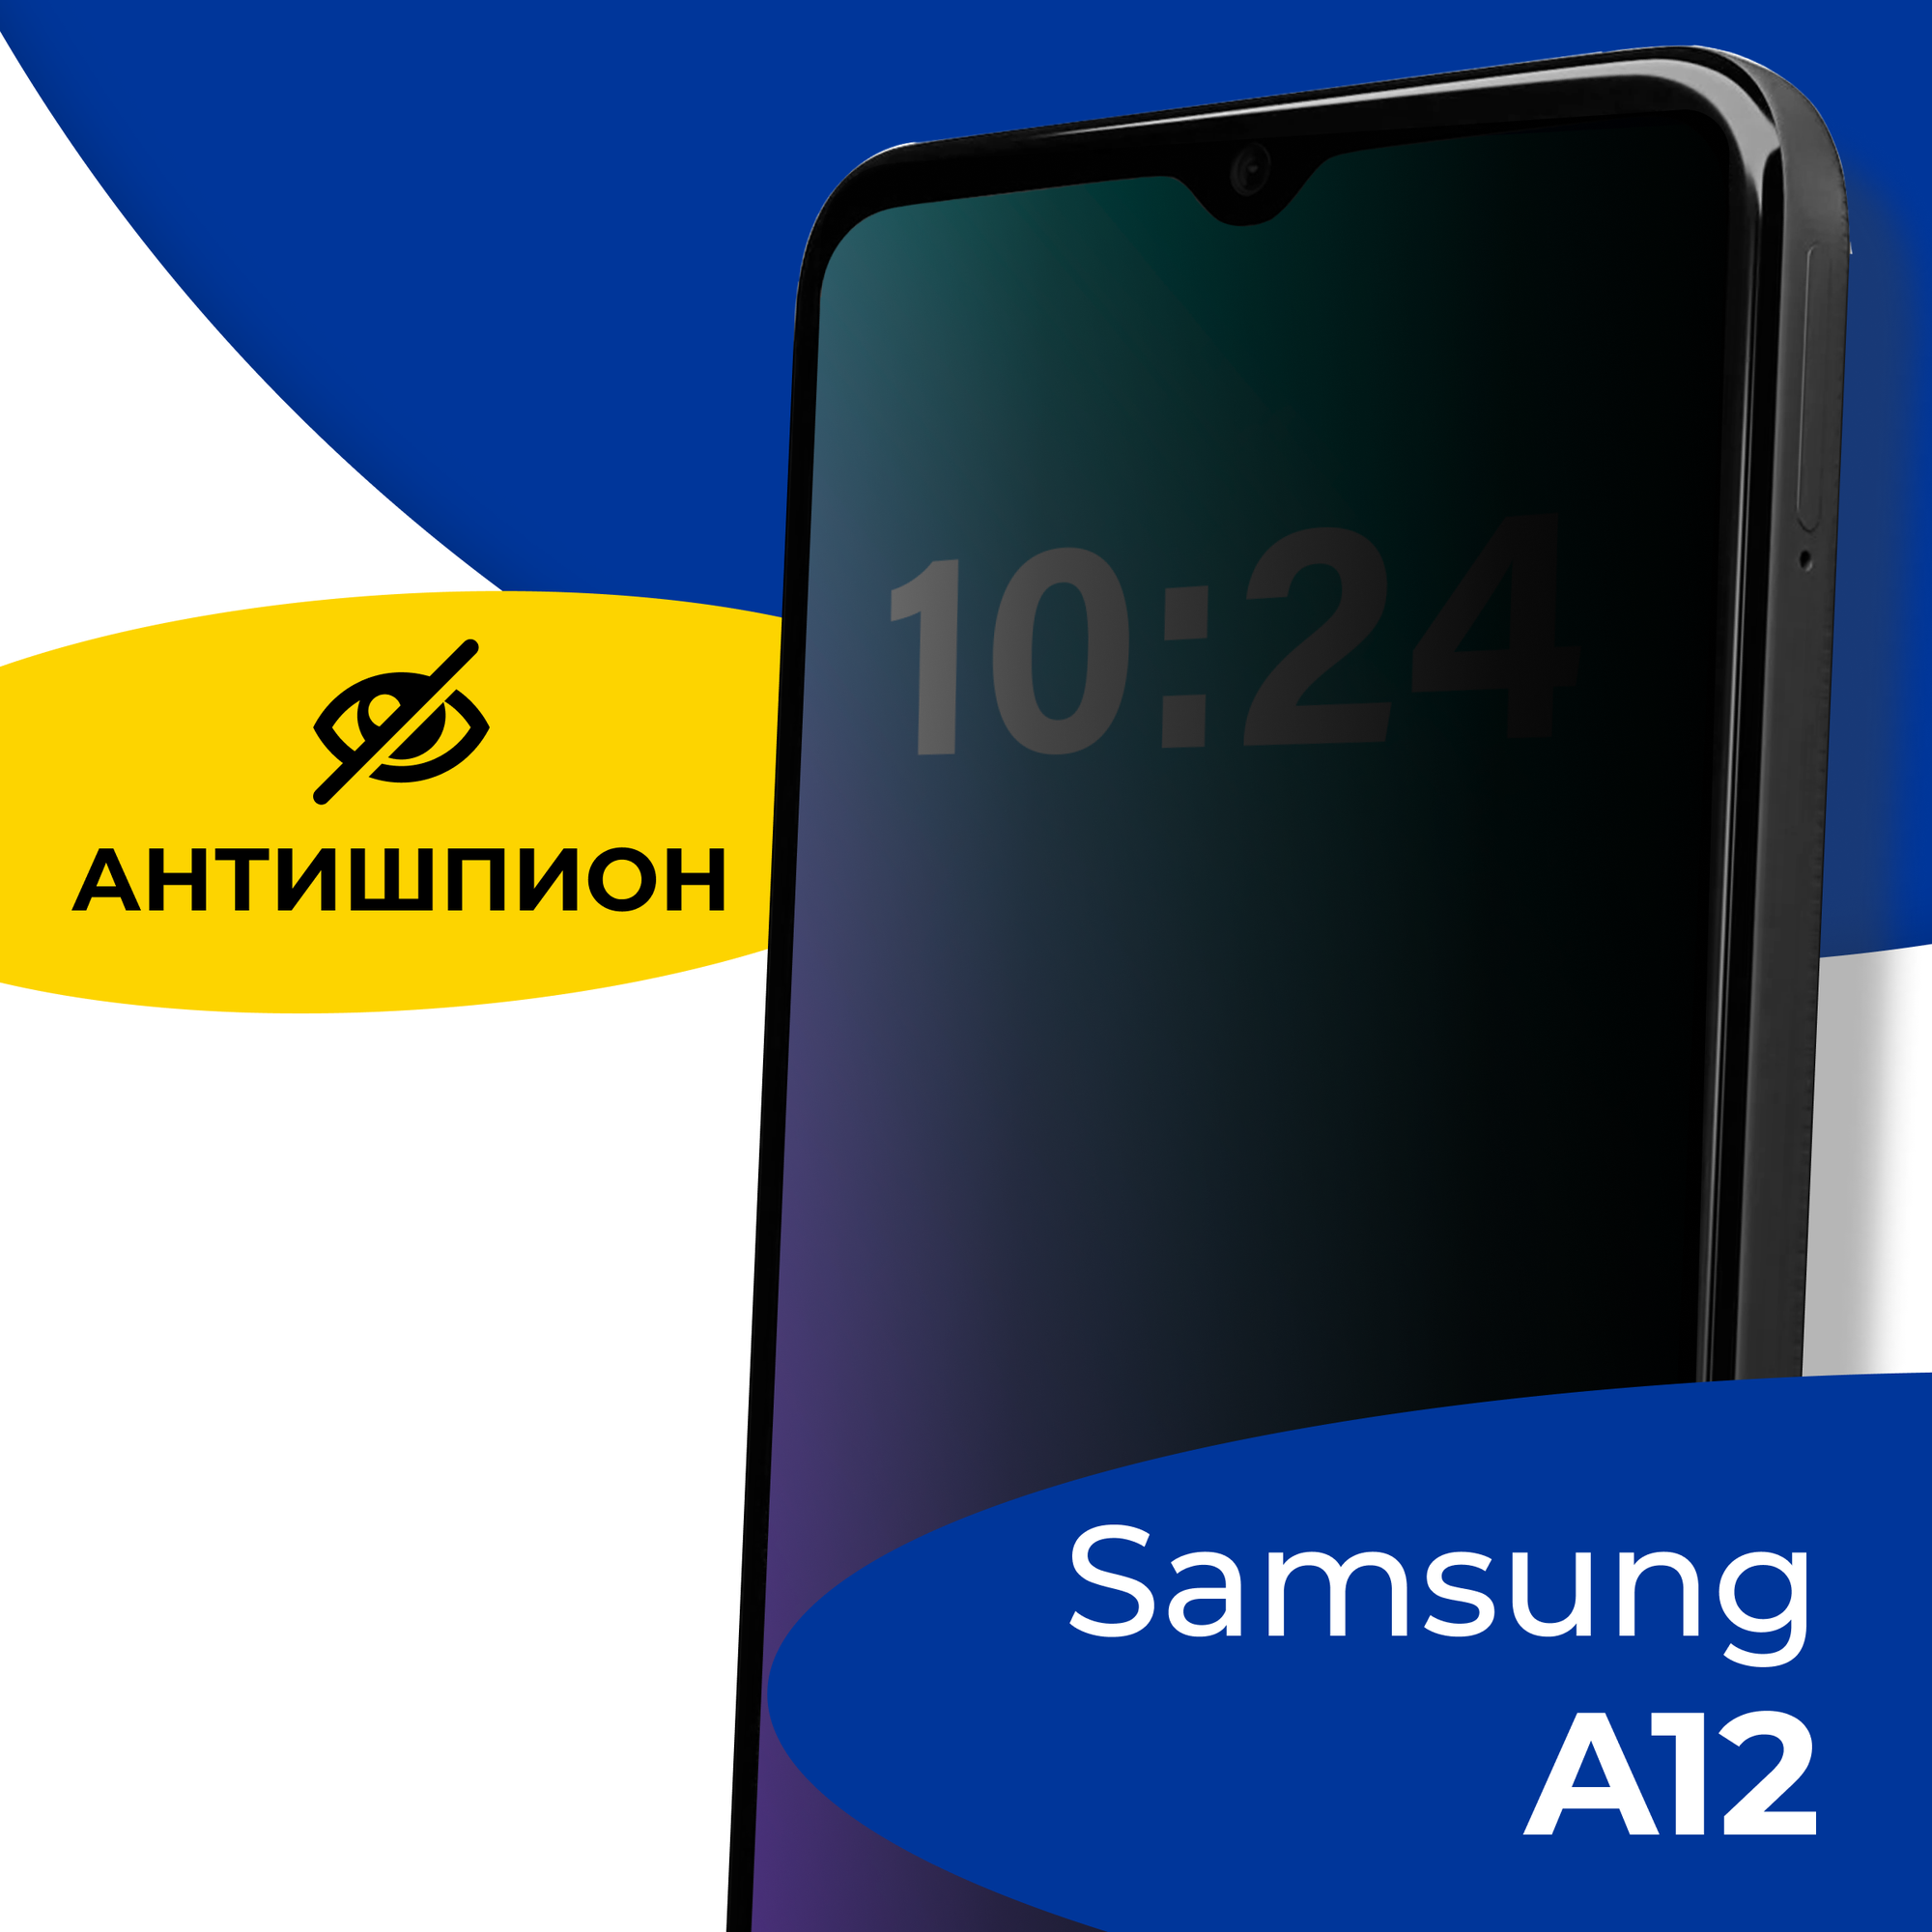 Защитное стекло Антишпион для телефона Samsung Galaxy A30 и A50 / Противоударное полноэкранное стекло 5D на смартфон Самсунг Галакси А30, А50 / Черное